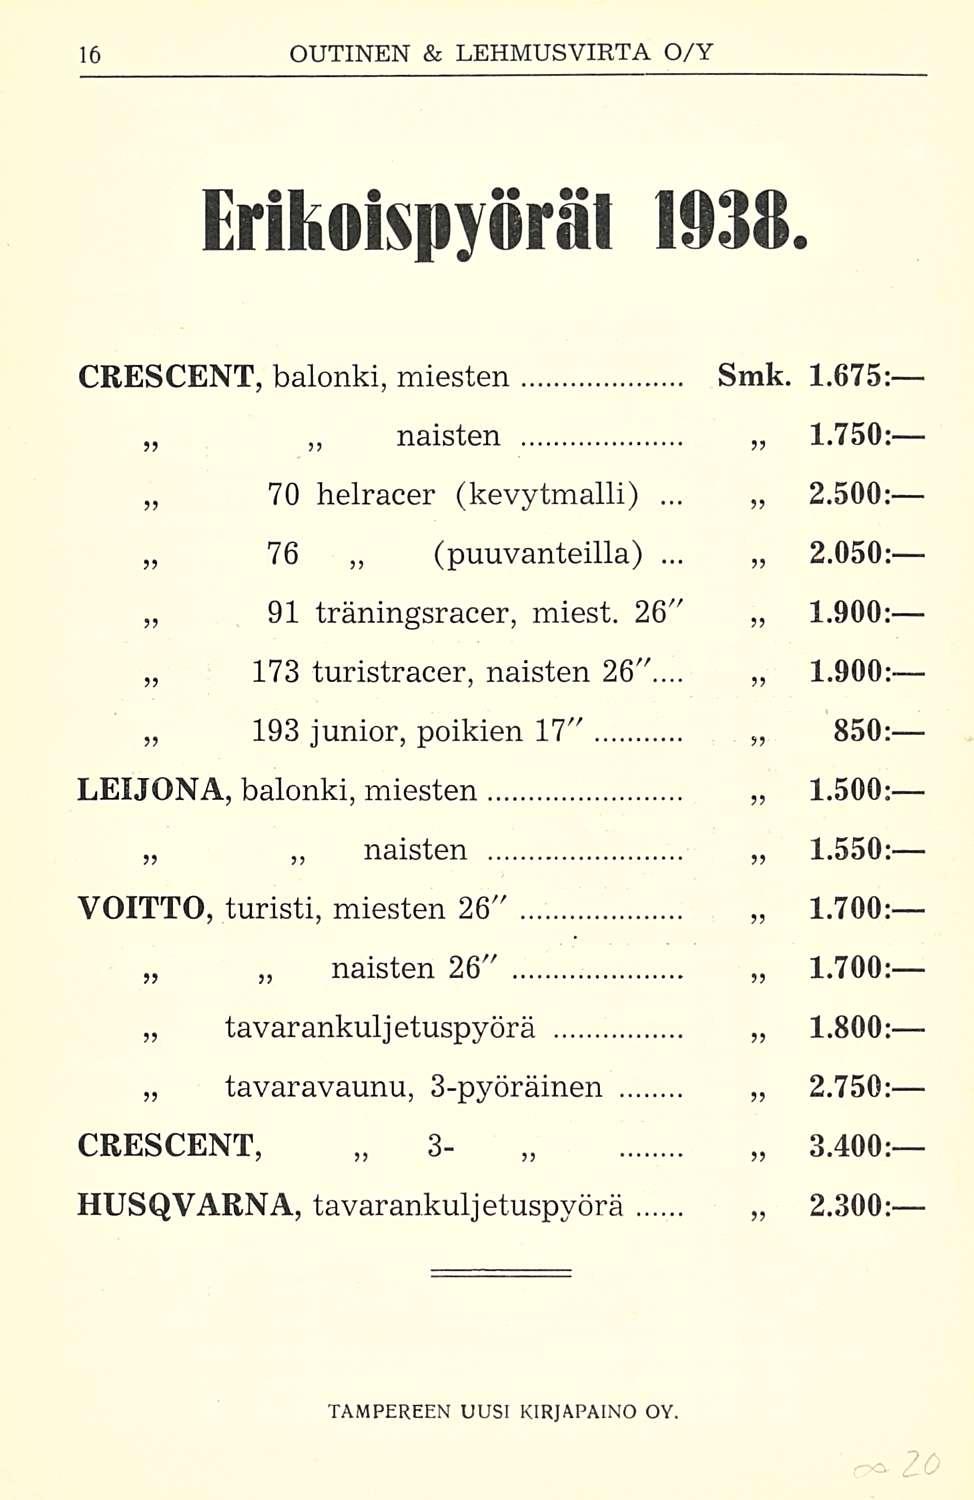 Erikoispyöräl 1938. CRESCENT, balonki, miesten Smk. 1.675: naisten 1.750; 70 helracer. (kevytmalli) 2.500: 76 (puuvanteilla). 91 träningsracer, miest.